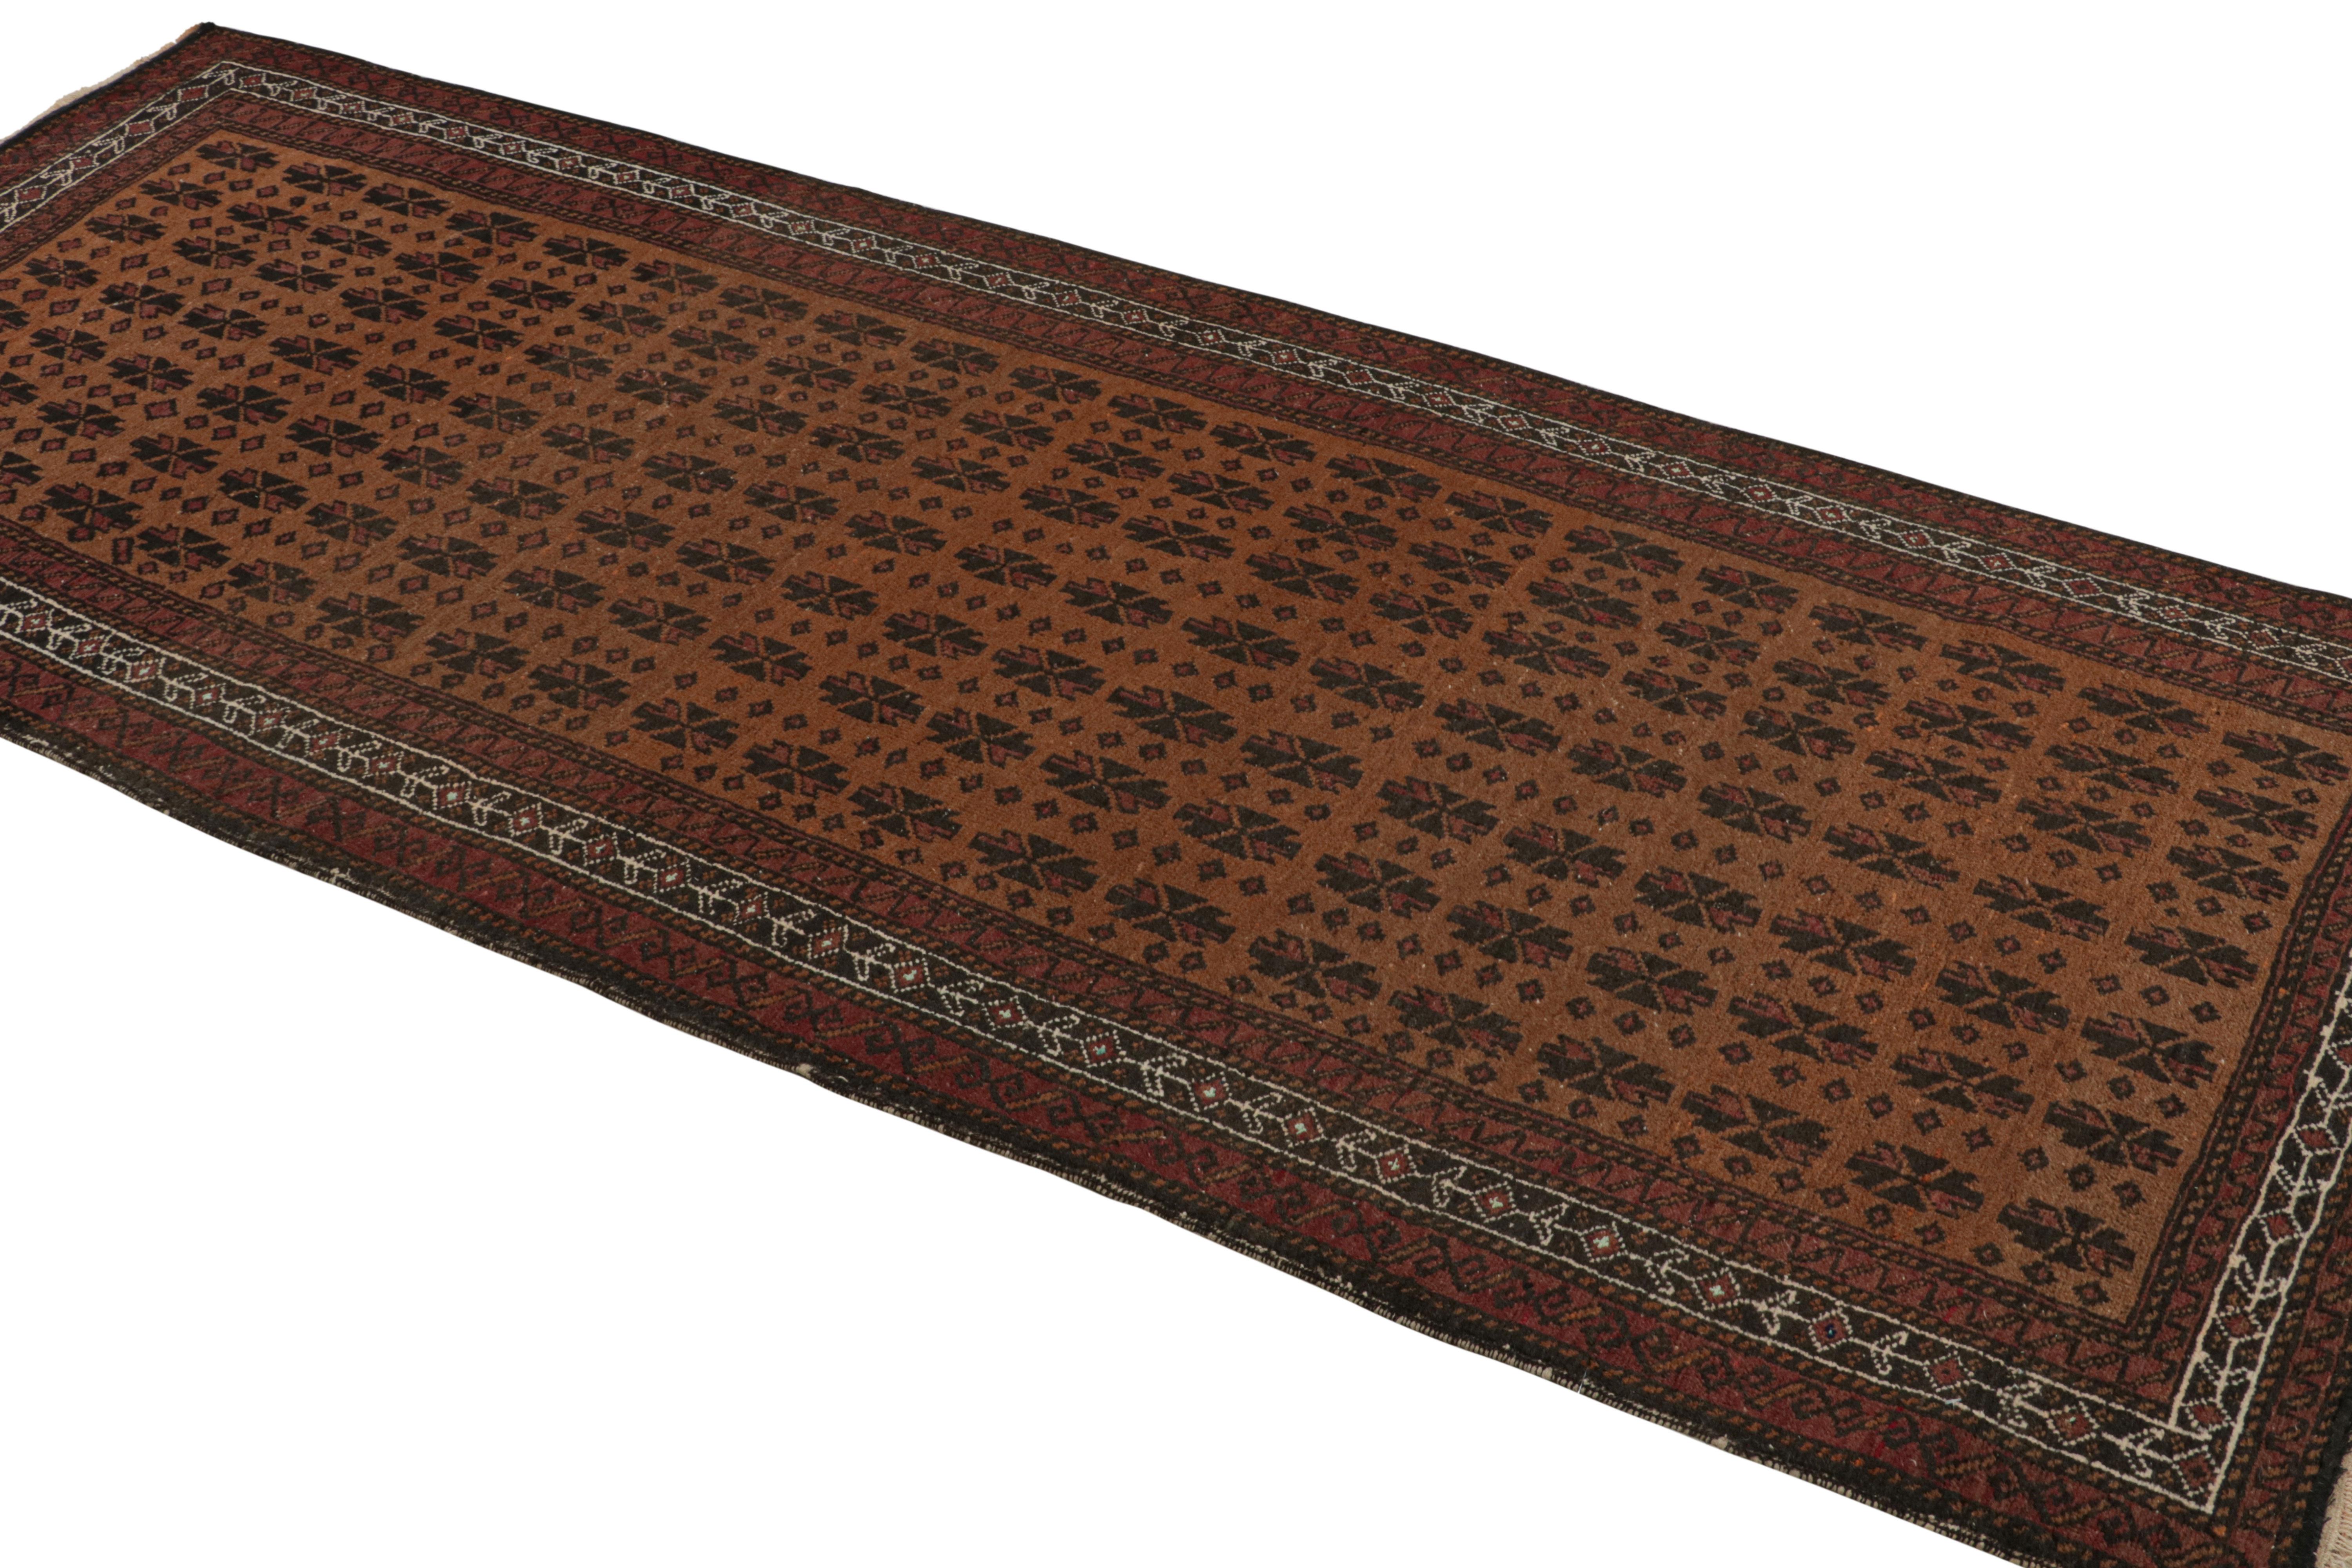 Dieser handgeknüpfte Wollteppich (ca. 1950-1960) mit einer Größe von 4x9 ist ein persischer Baluch-Läufer mit geometrischen Mustern in Burgunderrot und Schwarz, sowohl im Feld als auch in der Bordüre. 

Über das Design: 

Dieser vom Stamm der